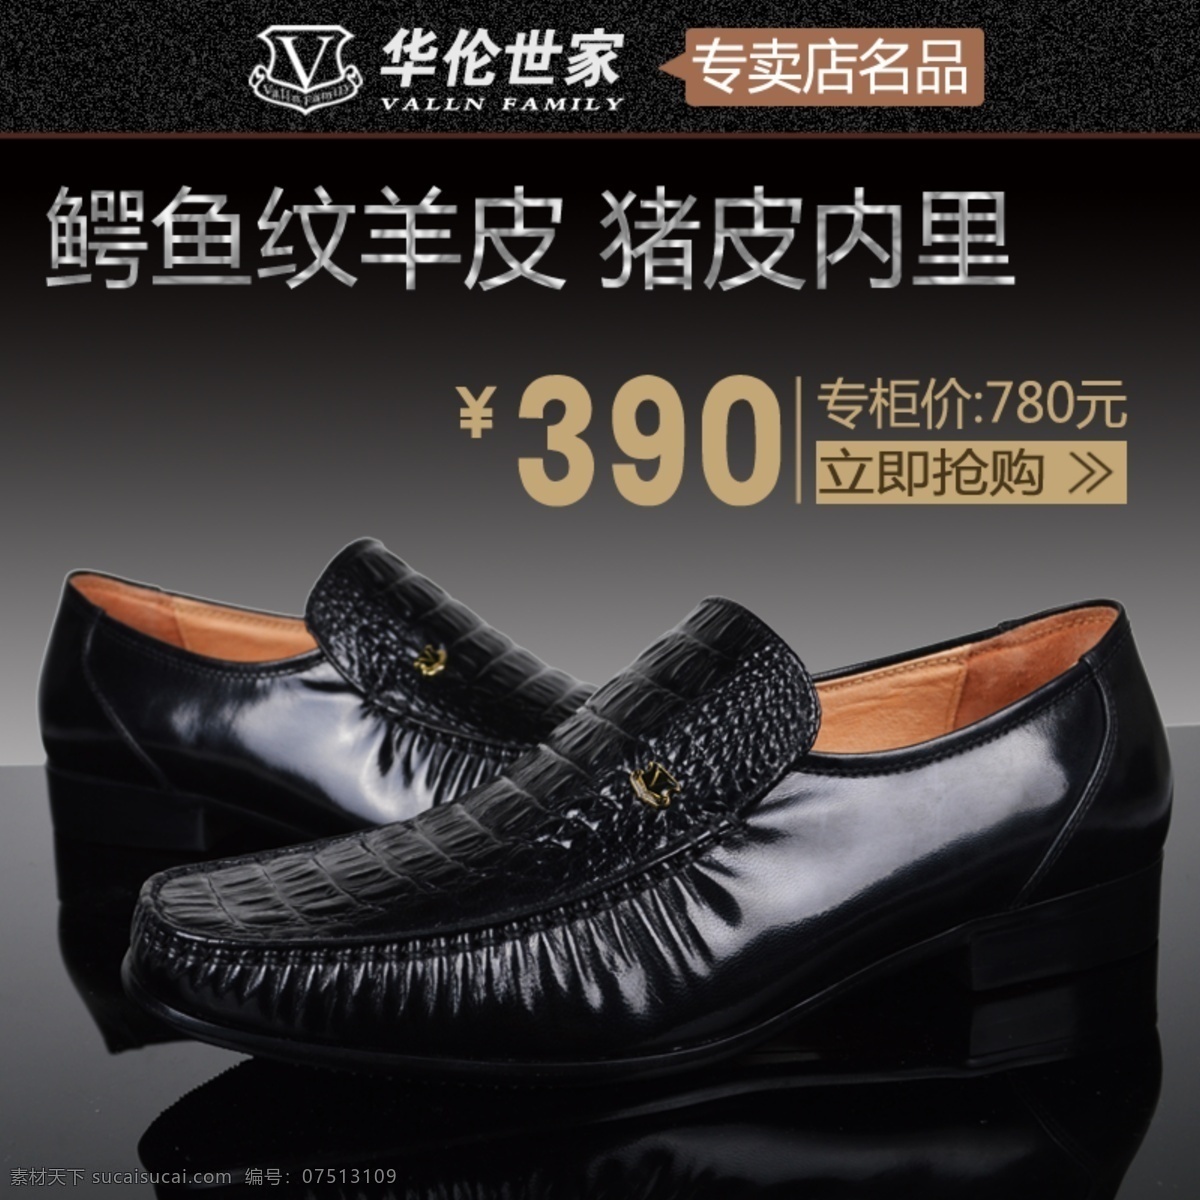 淘宝 男 皮鞋 促销 推广 男皮鞋 网页模板 源文件 中文模版 淘宝素材 其他淘宝素材